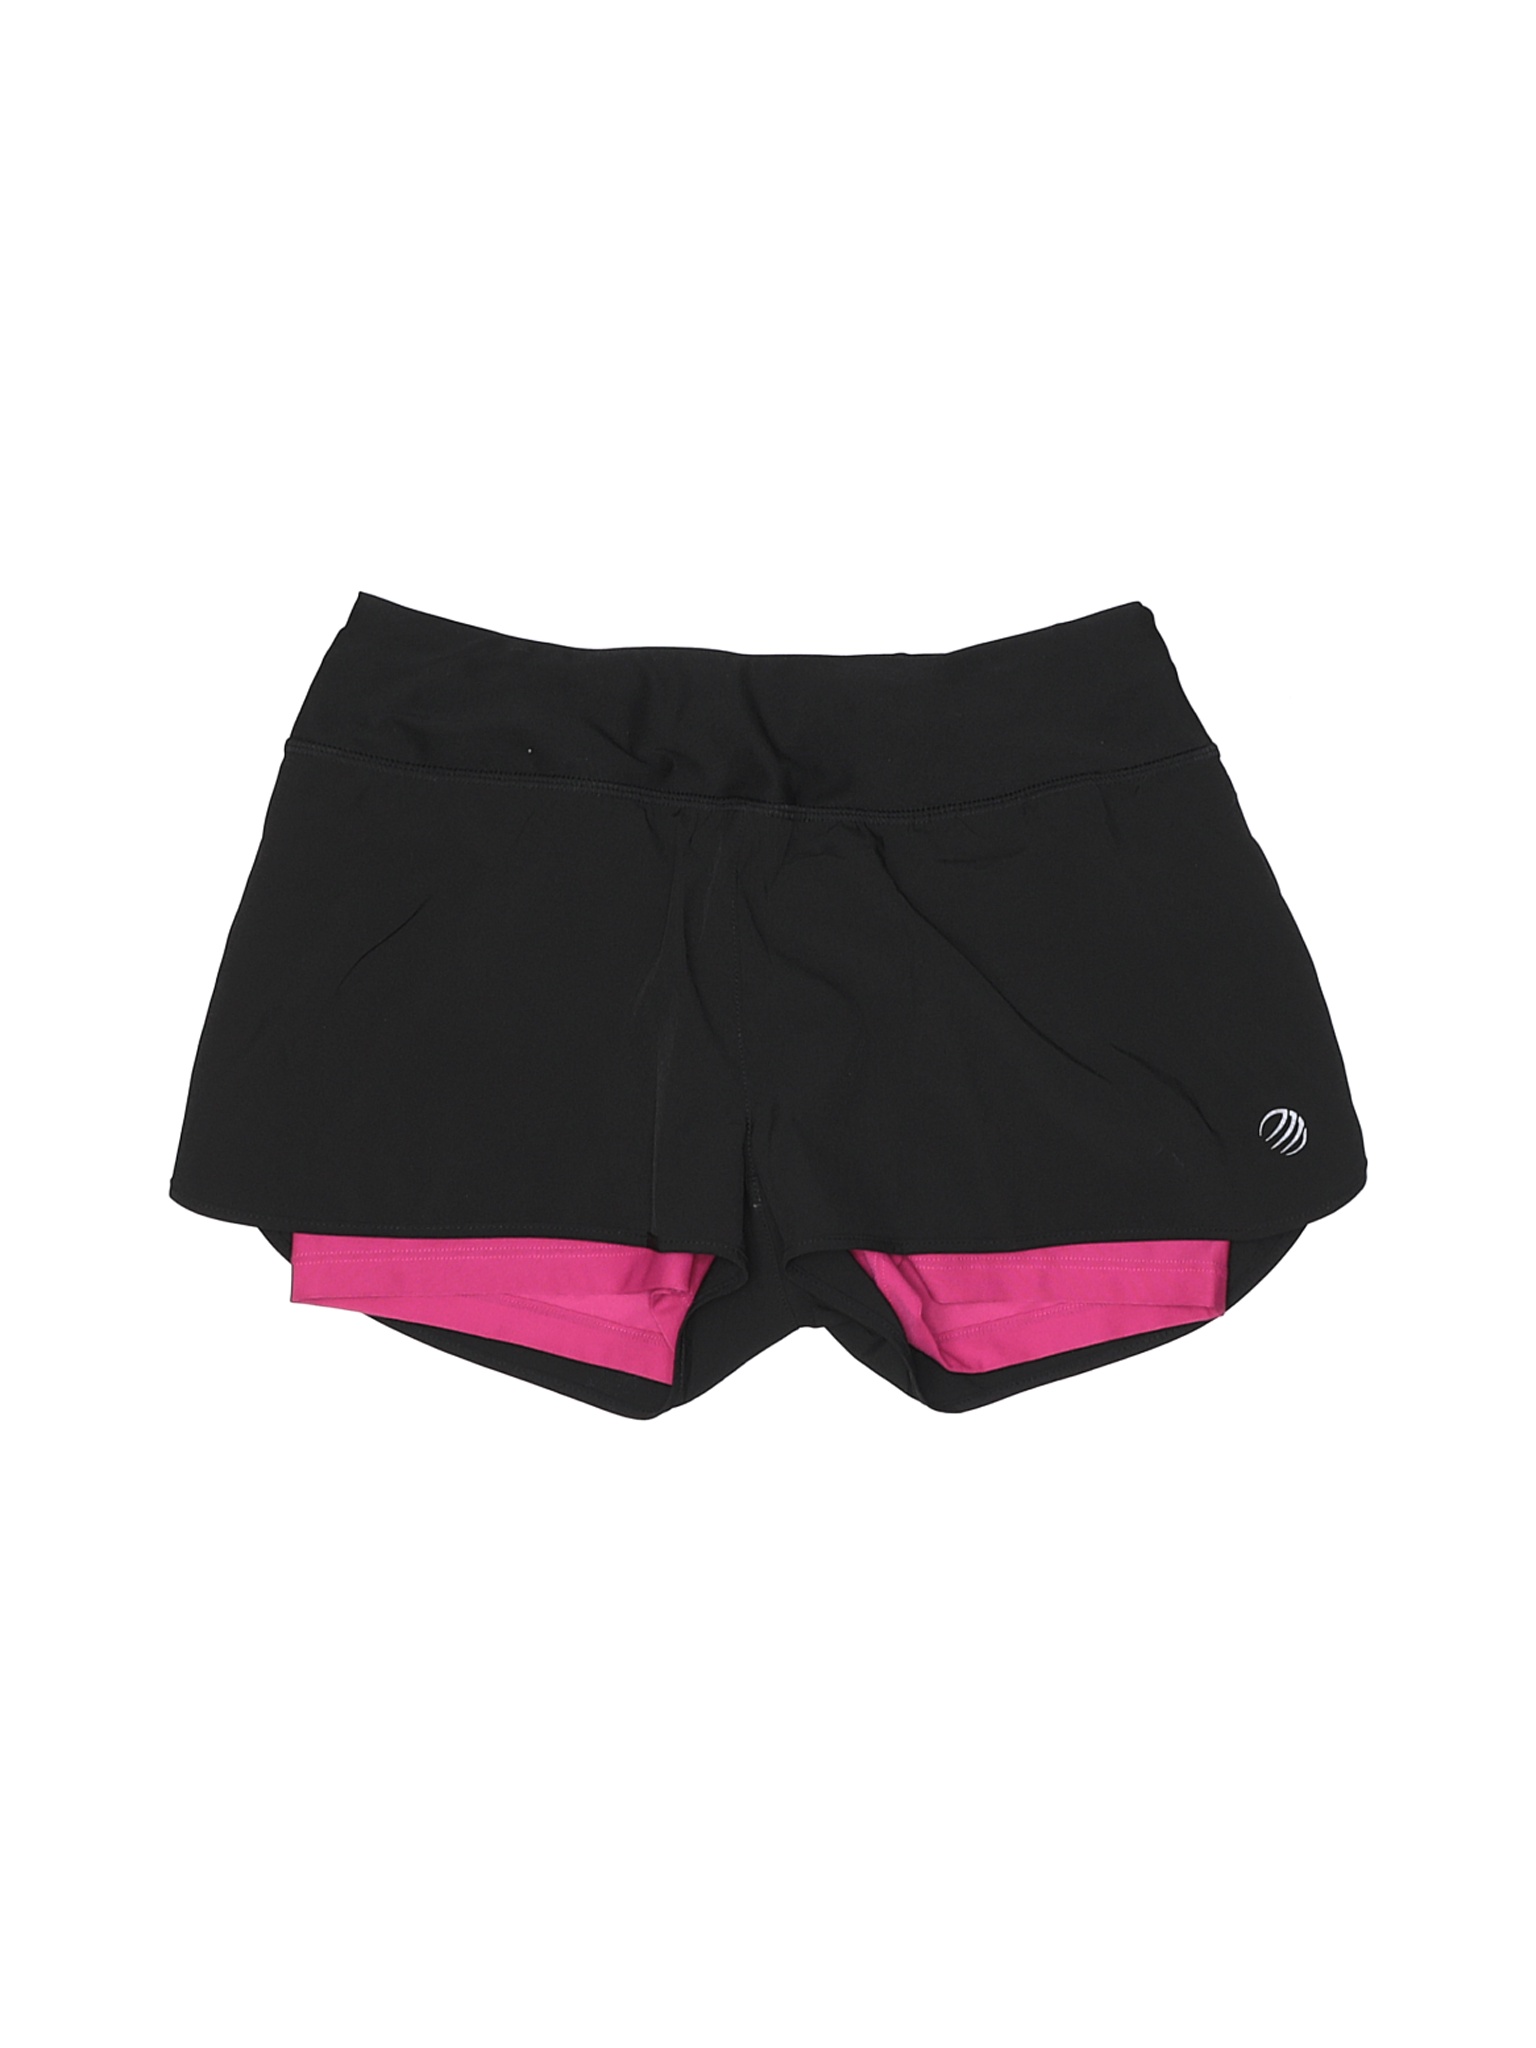 MPG Women Black Athletic Shorts XS | eBay